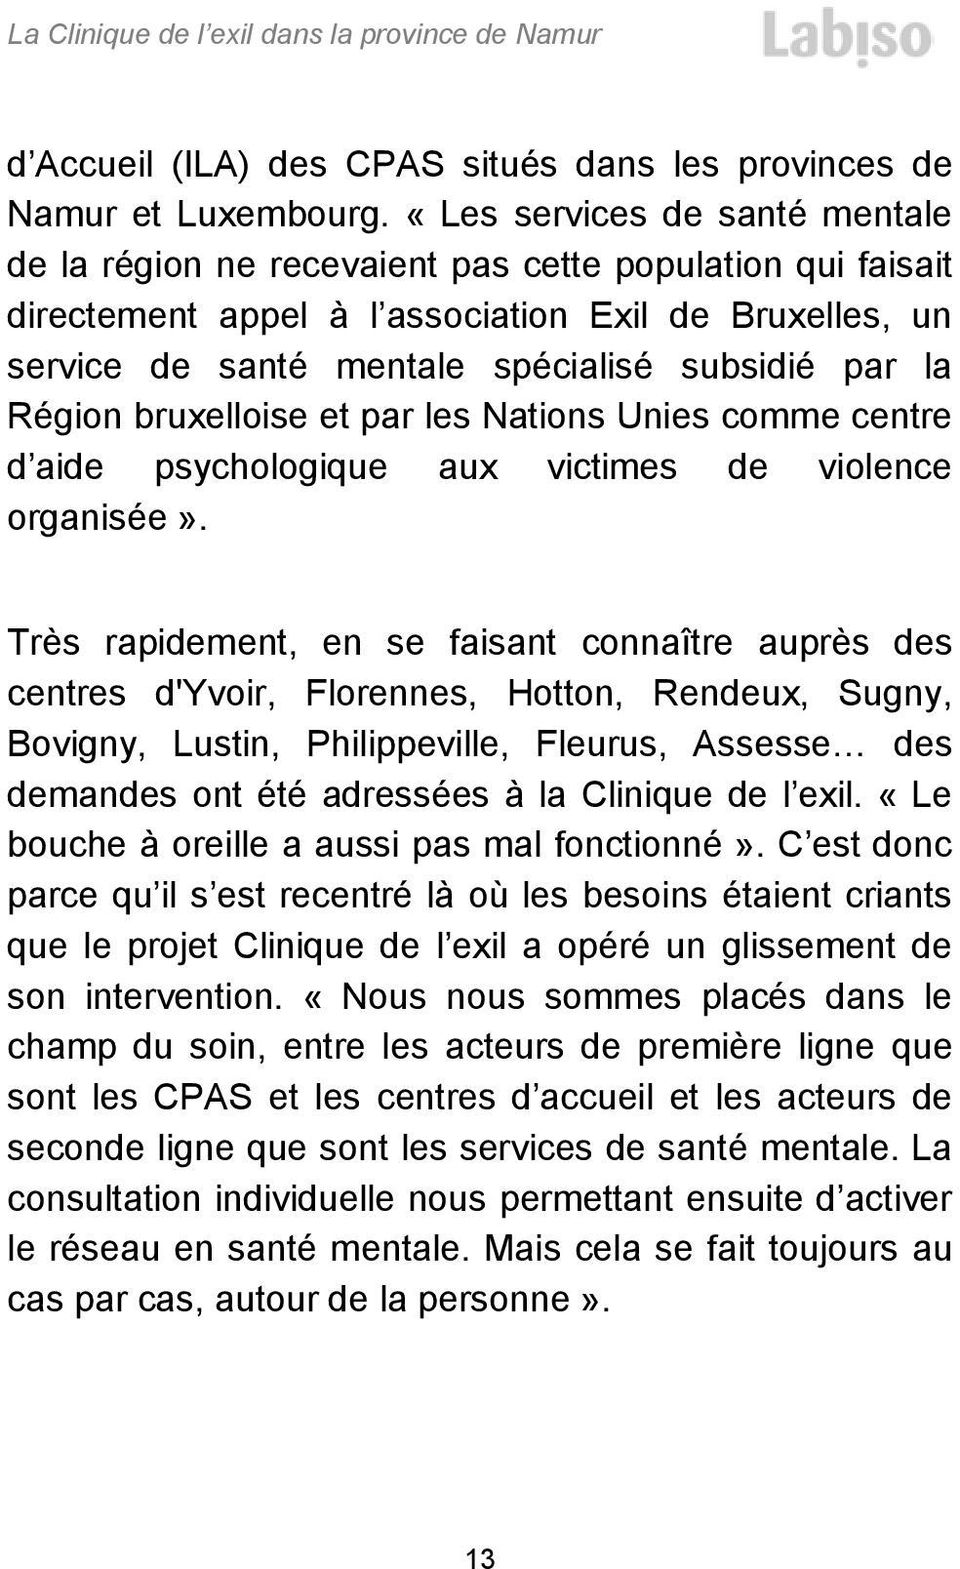 Région bruxelloise et par les Nations Unies comme centre d aide psychologique aux victimes de violence organisée».